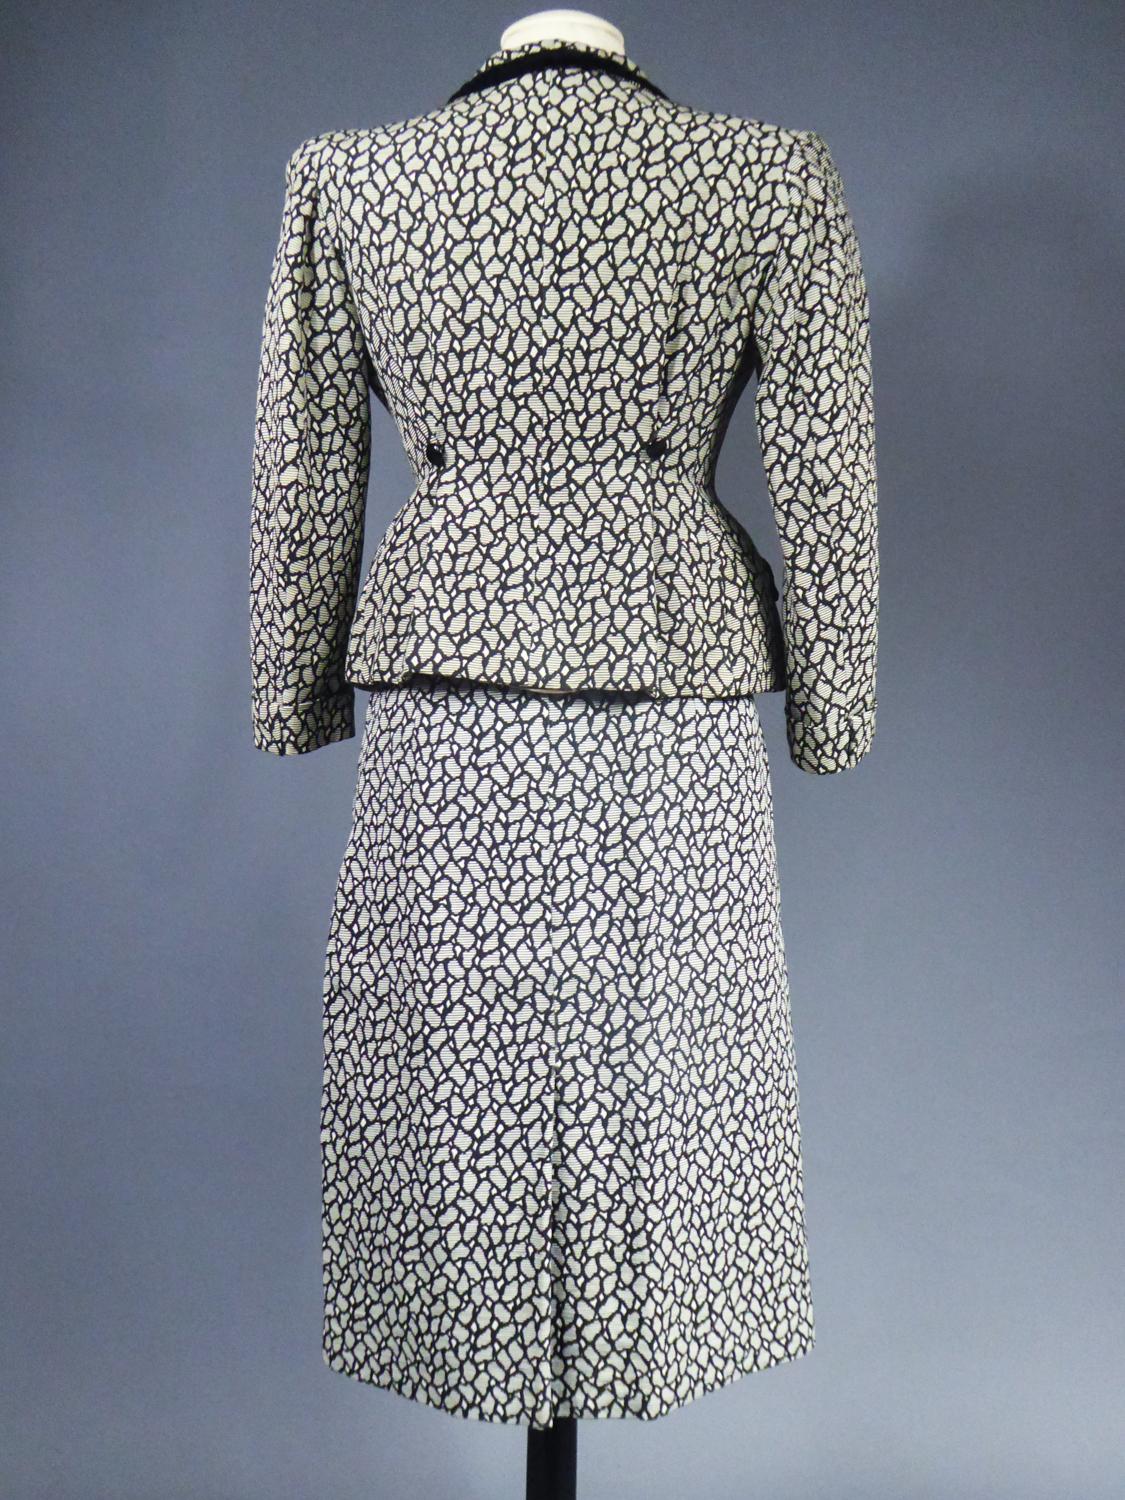 New Look Bar Skirt Suit Circa 1945/1950 6